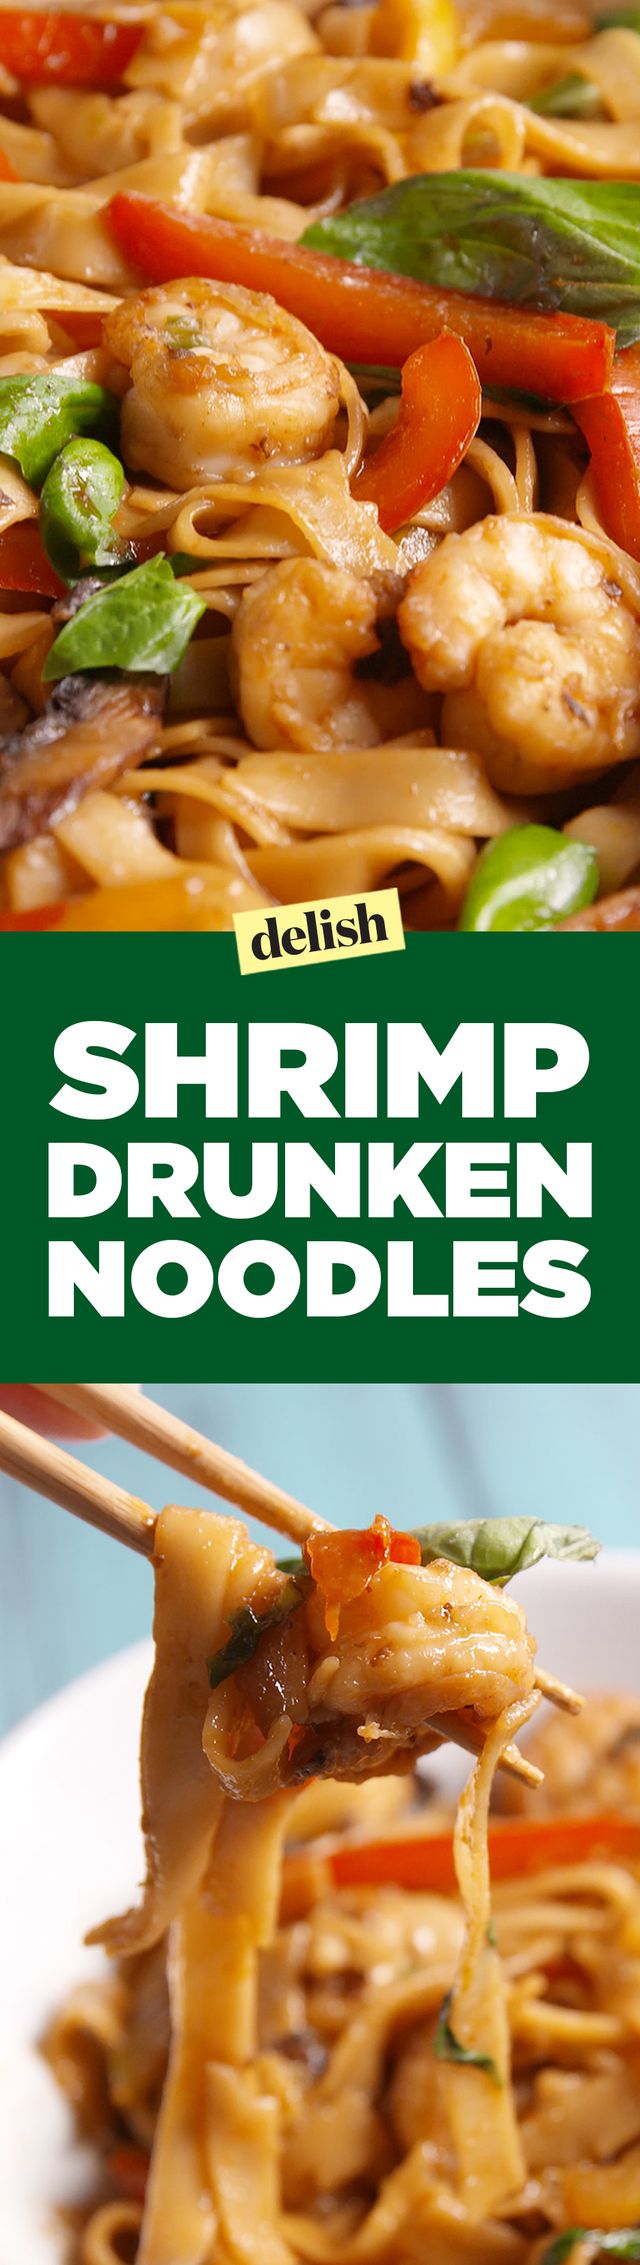 Cooking Shrimp Drunken Noodles Video - How to Shrimp Drunken Noodles Video